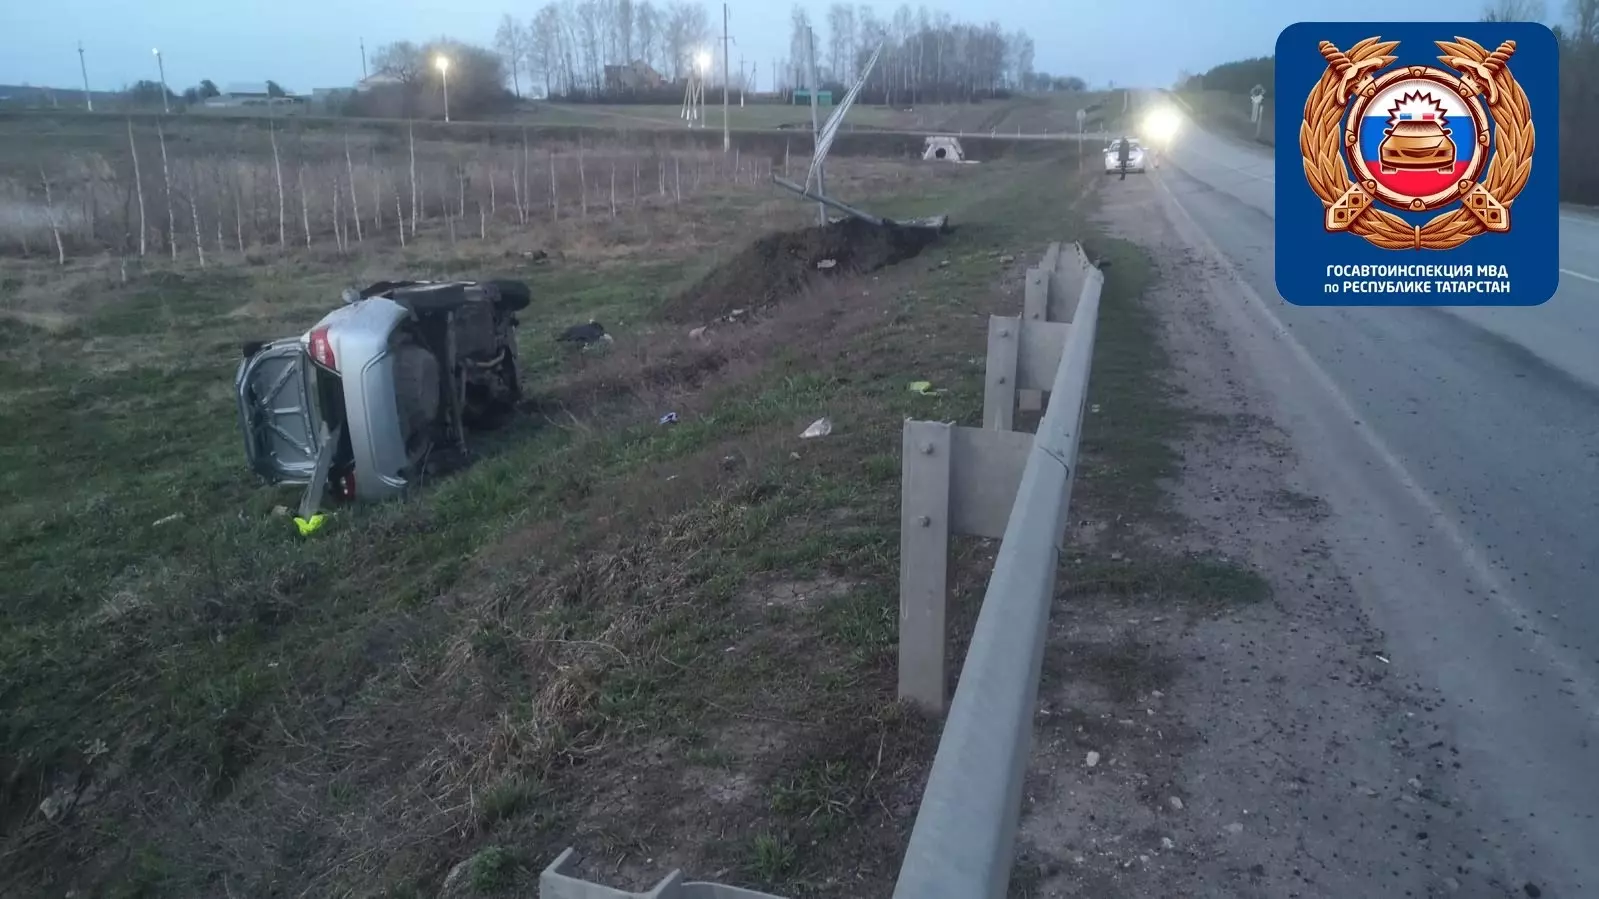 Перевернулся и вылетел из машины: парень погиб в страшном ДТП в Татарстане